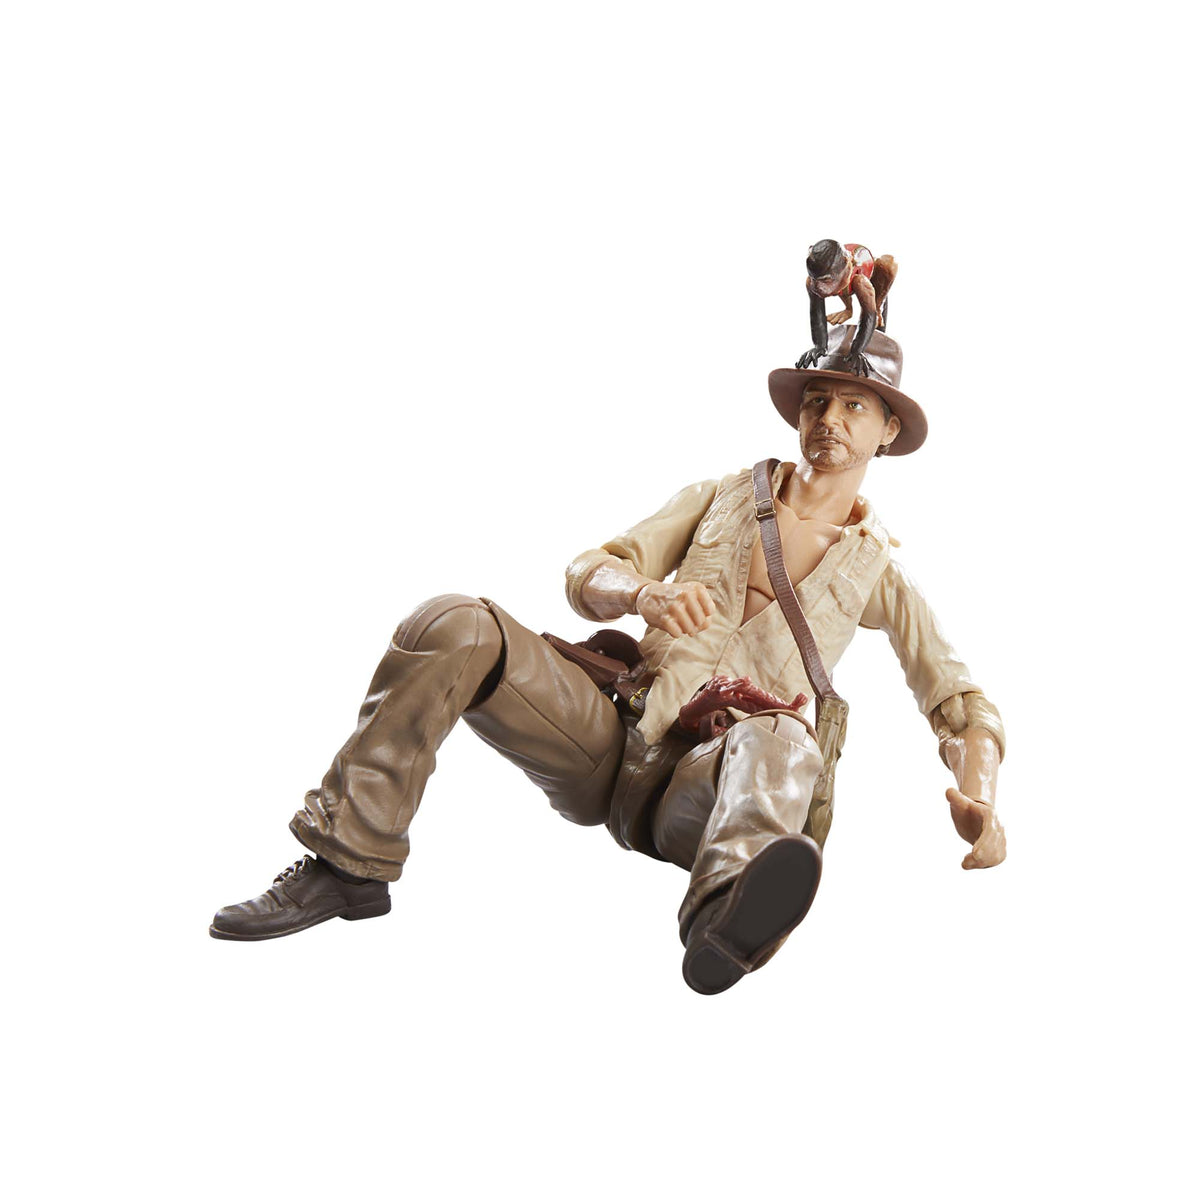 Indiana Jones Adventure Series Indiana Jones (Cairo) Action Figure (6”) - Indiana  Jones